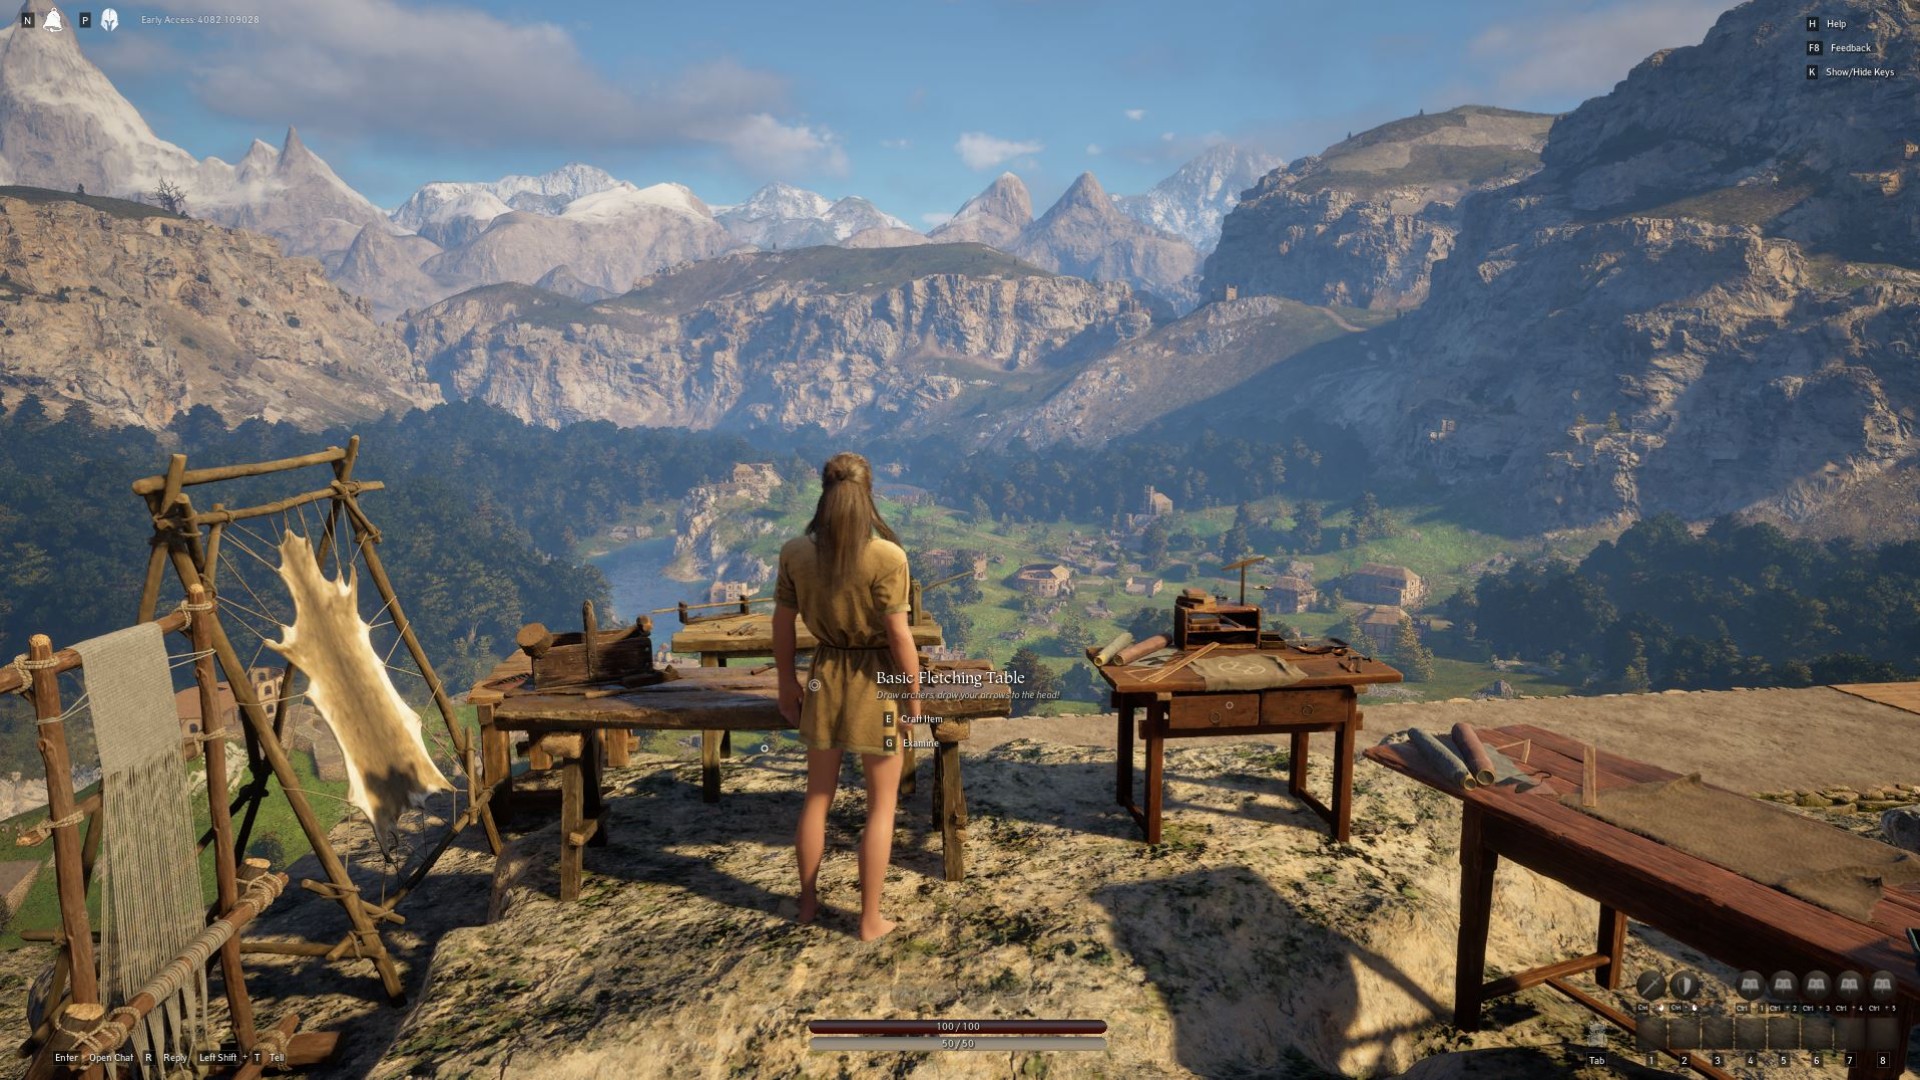 Pax Dei izlenimleri: Oyuncu karakteri bir işçilik bankında duruyor ve dağlarla çevrili bir vadideki köy binasına bakıyor.